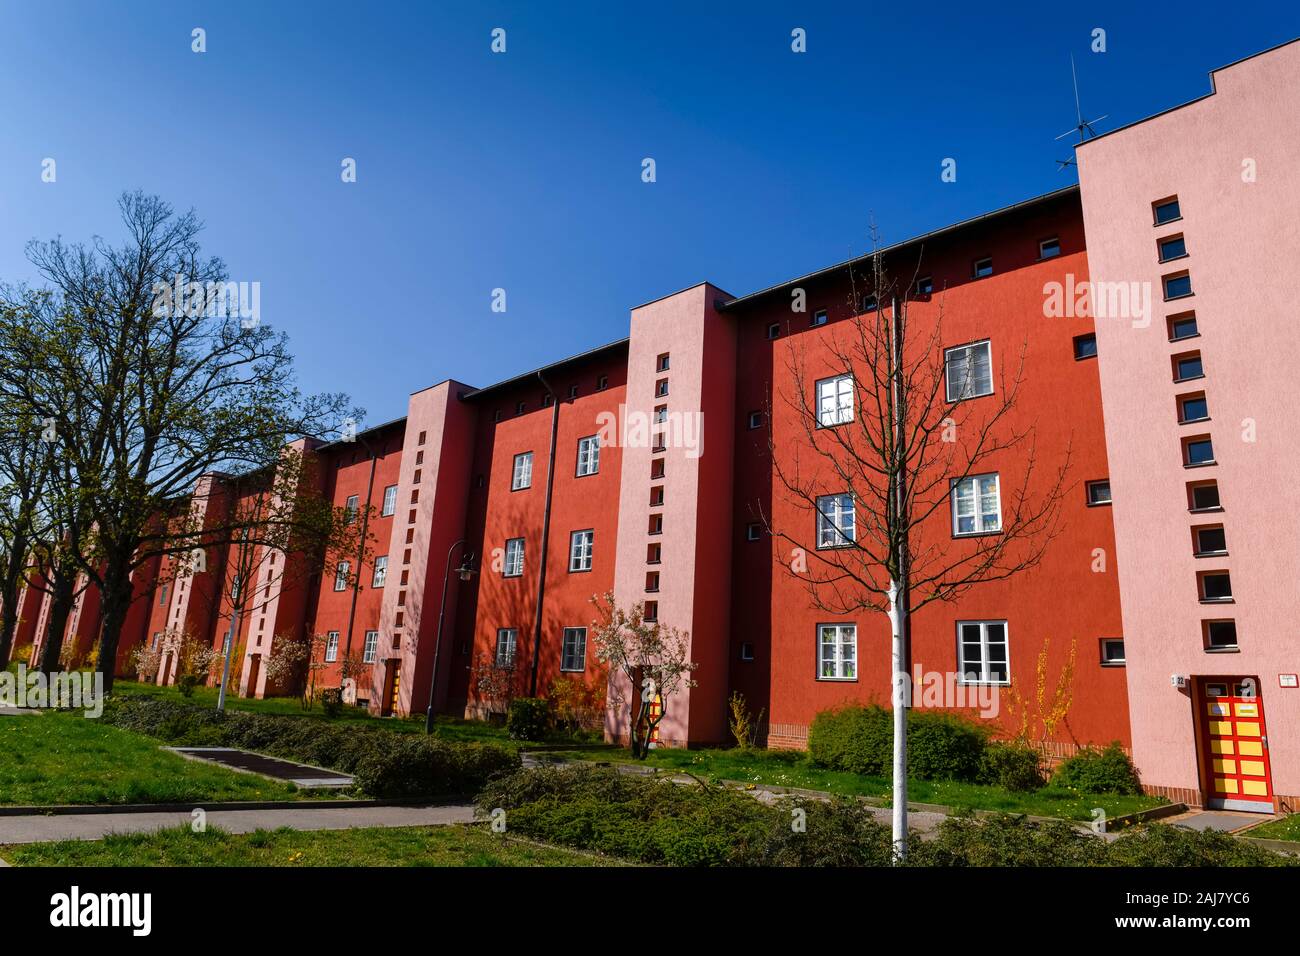 Wohnhäuser, Fritz-Reuter-Allee, Hufeisensiedlung, Britz, Neukölln, Berlin, Deutschland Banque D'Images